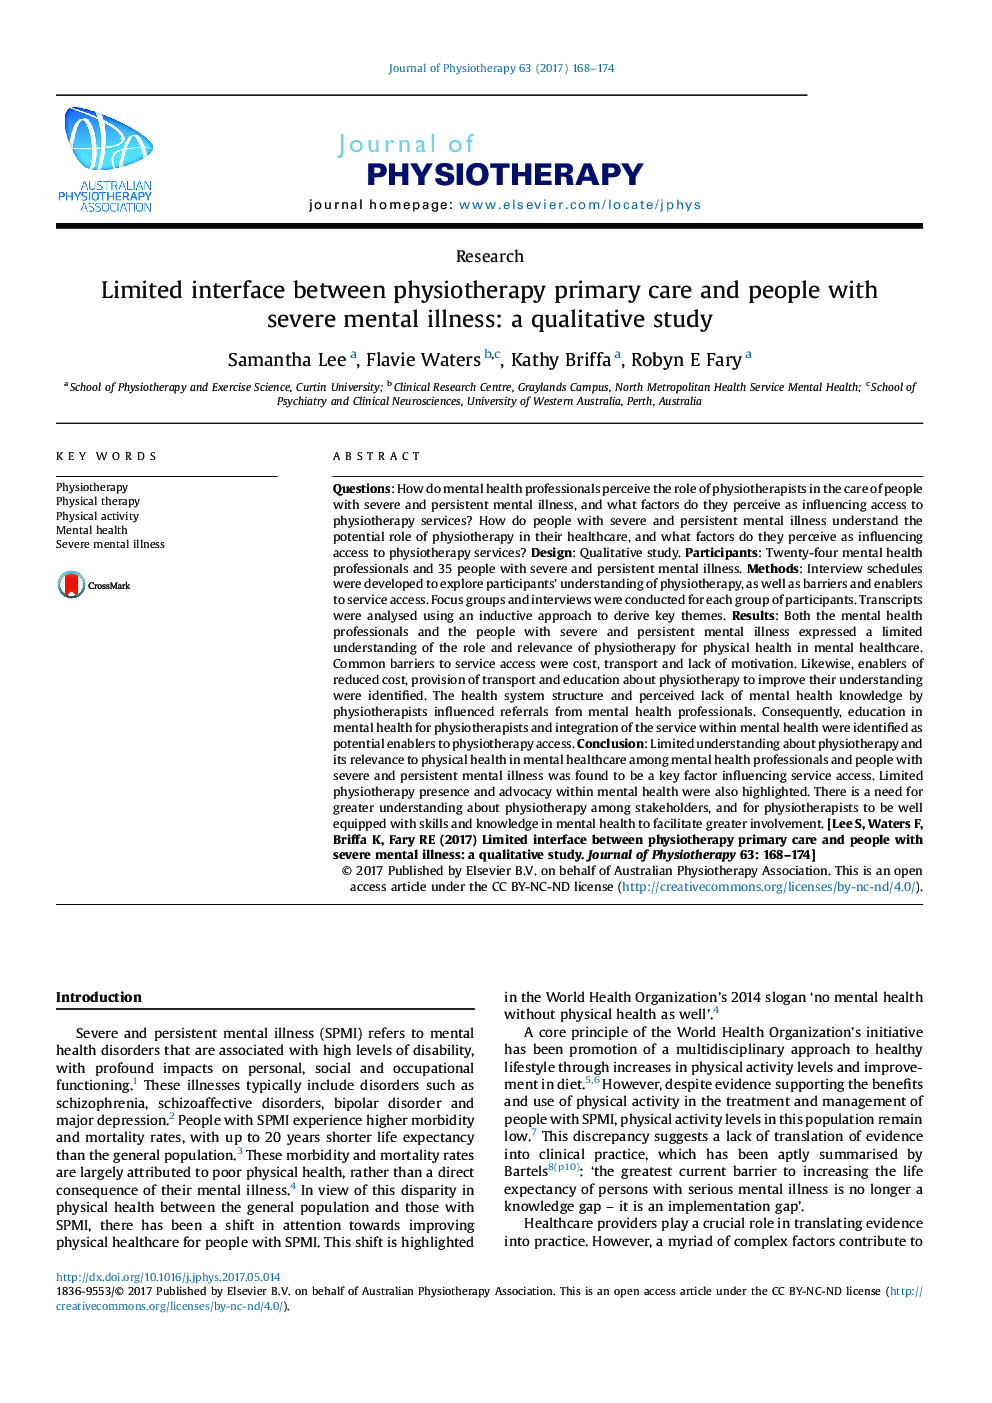 رابط کاربری محدود بین مراقبت های اولیه فیزیوتراپی و افراد مبتلا به بیماری های شدید روانی: یک مطالعه کیفی 